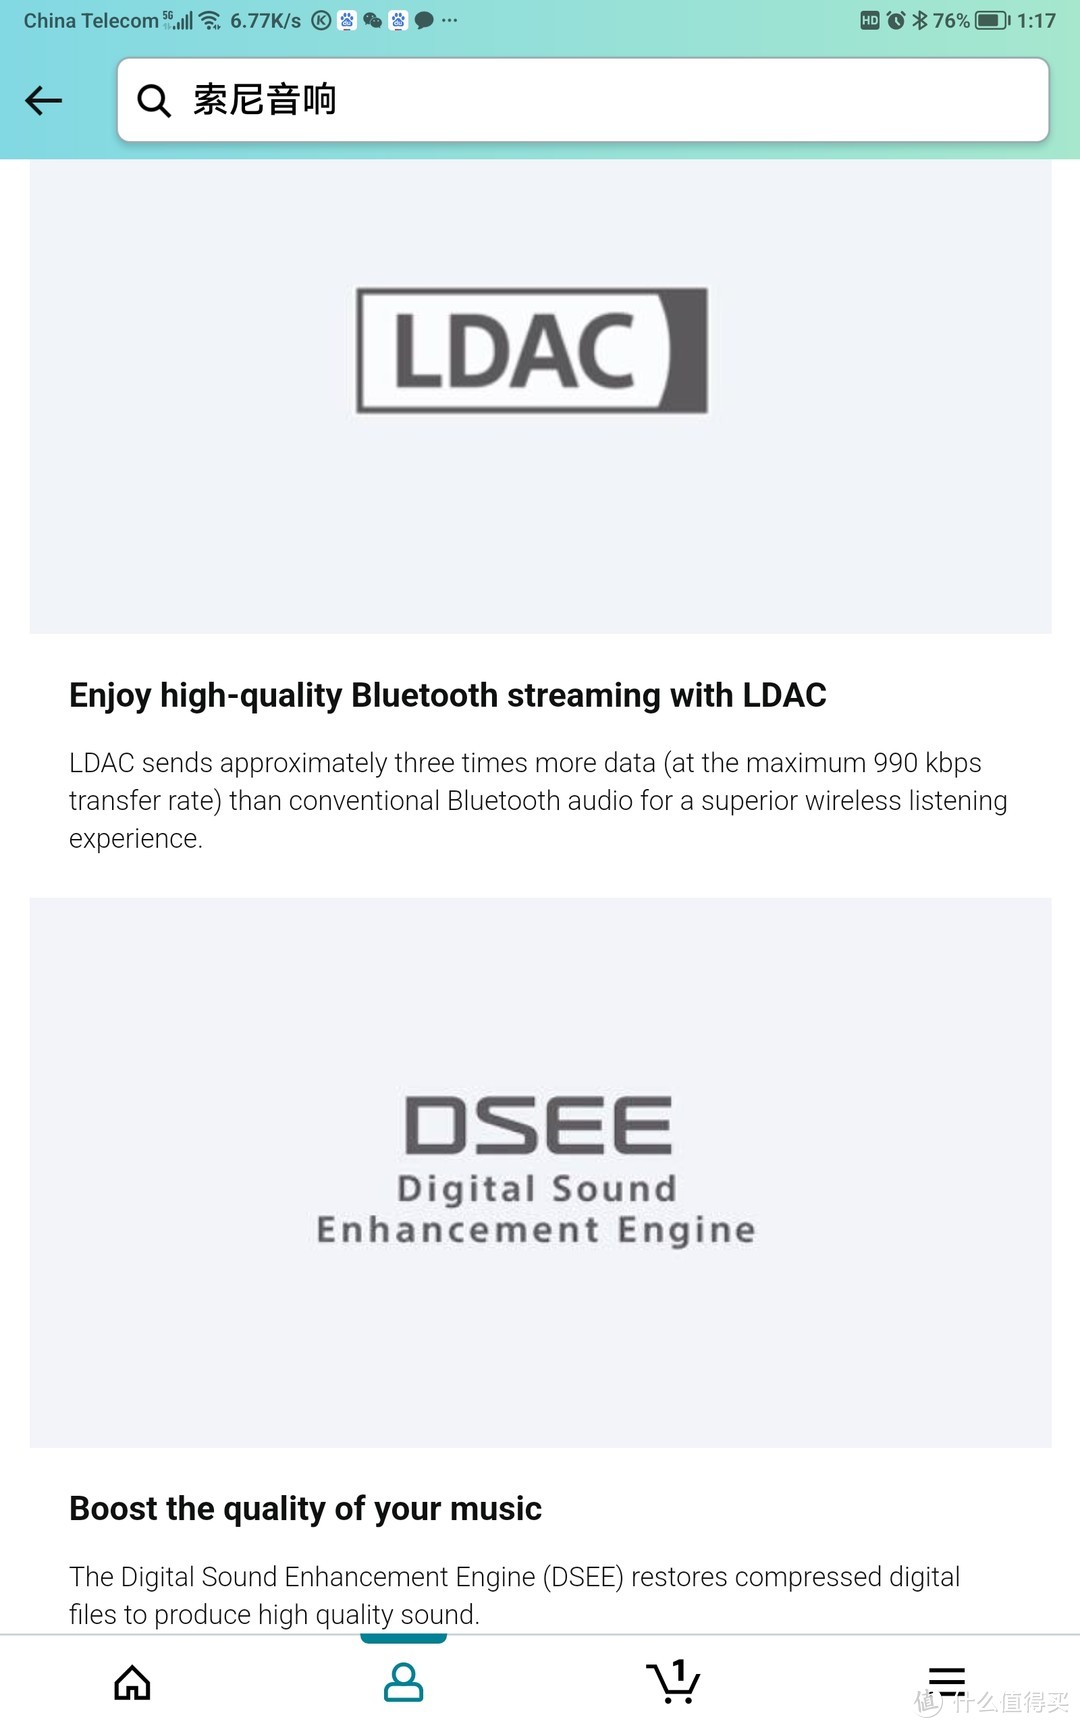 最大的安慰是它支持LDAC编码的蓝牙传输和DSEE增强解码，但是楼主是木耳朵，不大听得出来区别。